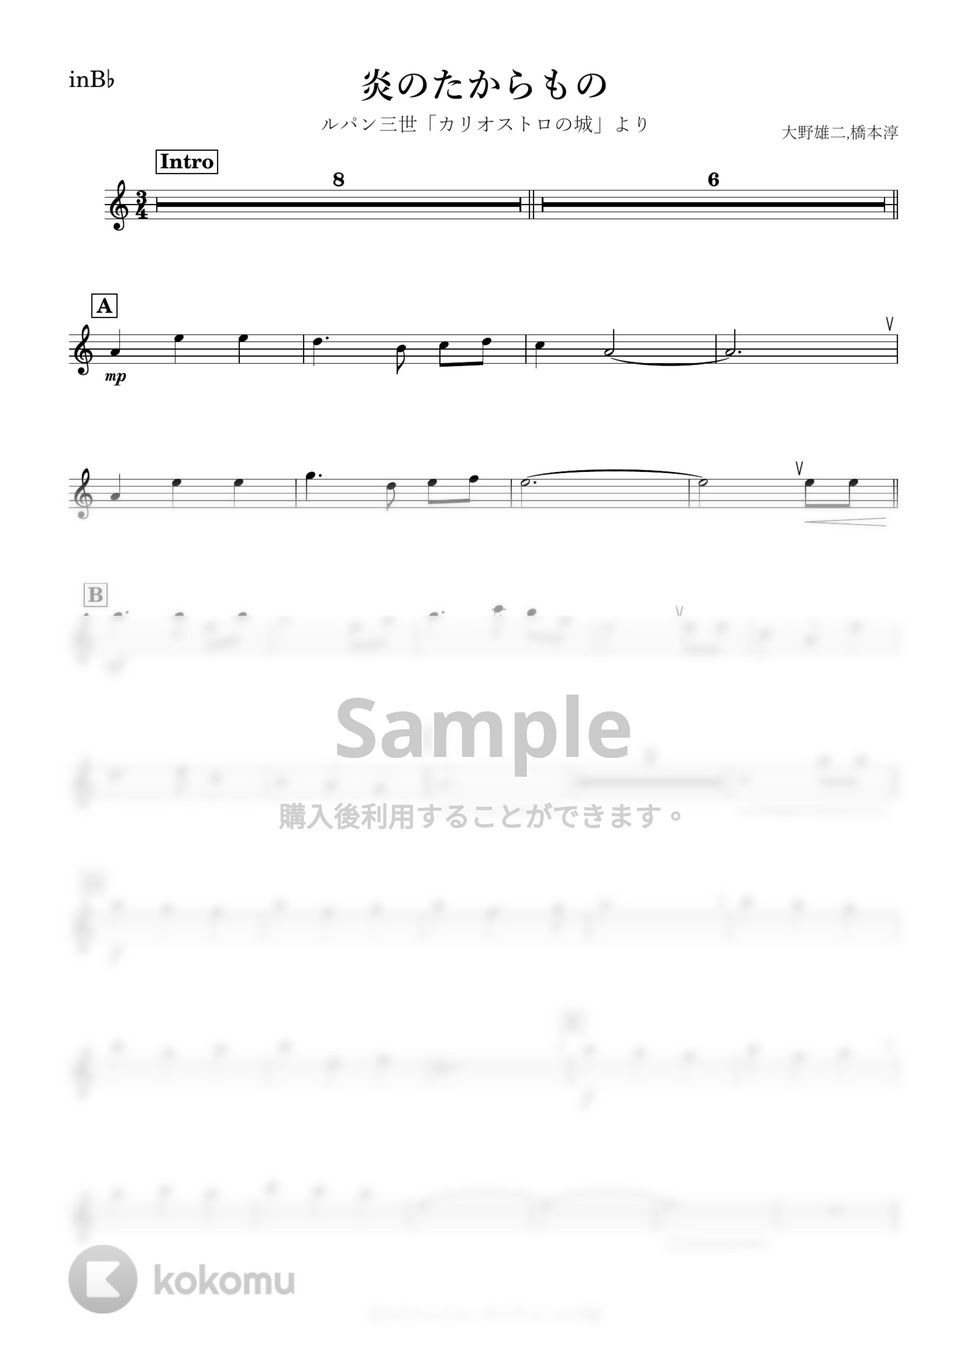 ルパン三世 - 炎のたからもの (B♭) by kanamusic